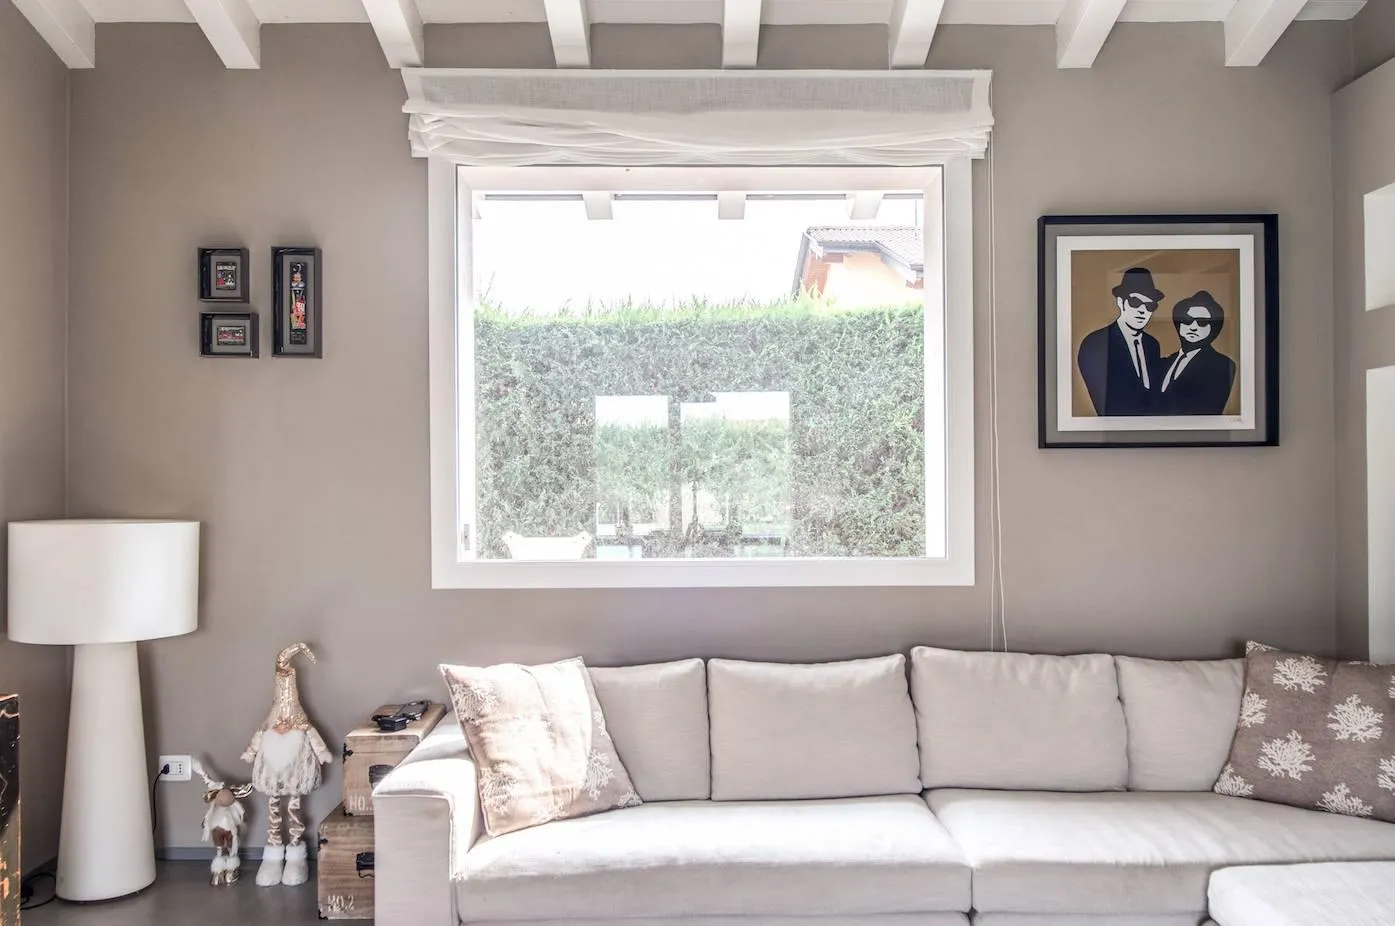 Appendere al meglio i quadri di casa - Frimar serramenti Milano